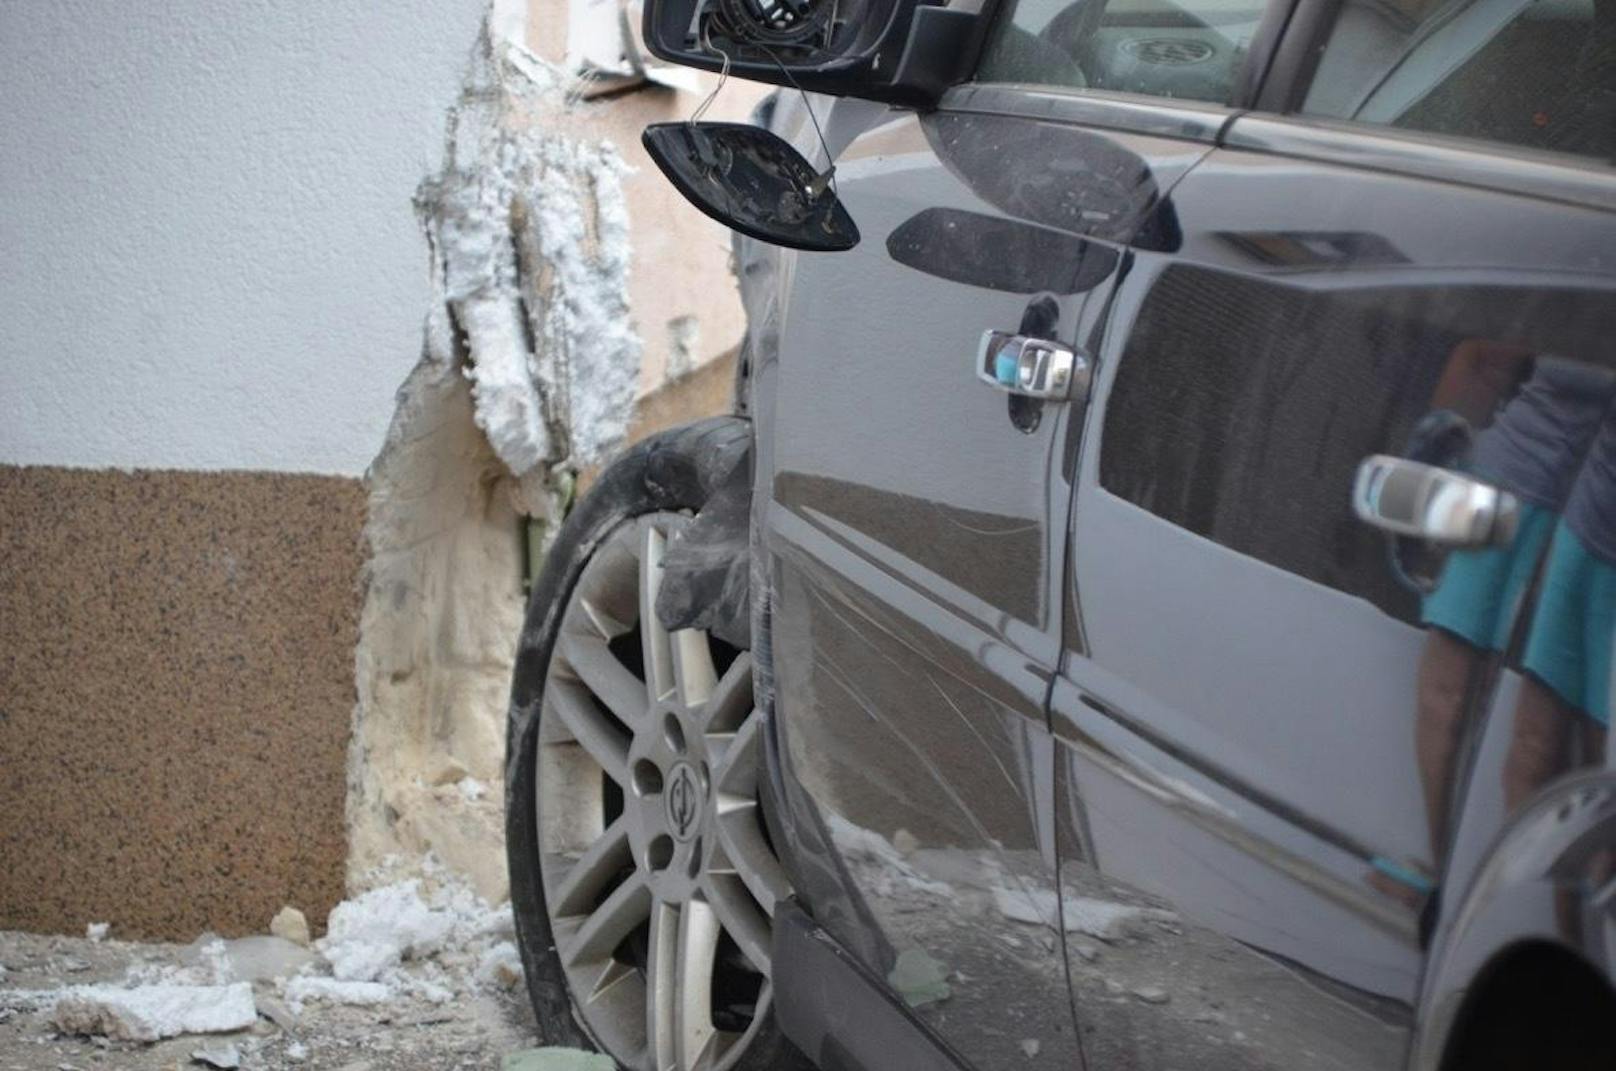 Opel raste gegen Haus - Lenker per Heli ins Spital